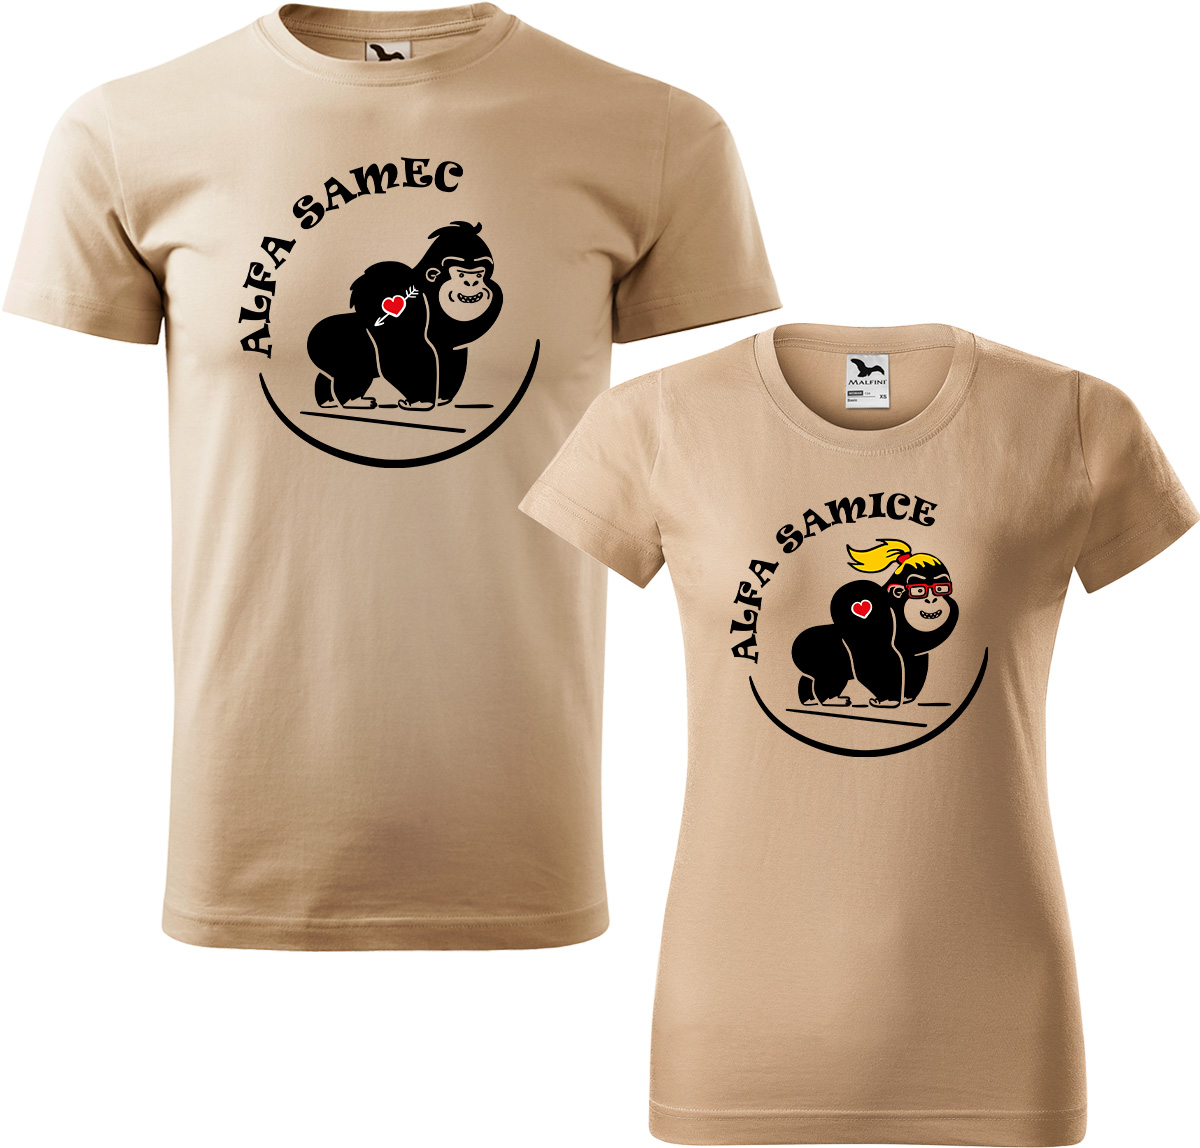 Trička pro páry - Alfa samec a alfa samice Barva: Písková (08), Velikost dámské tričko: XL, Velikost pánské tričko: XL